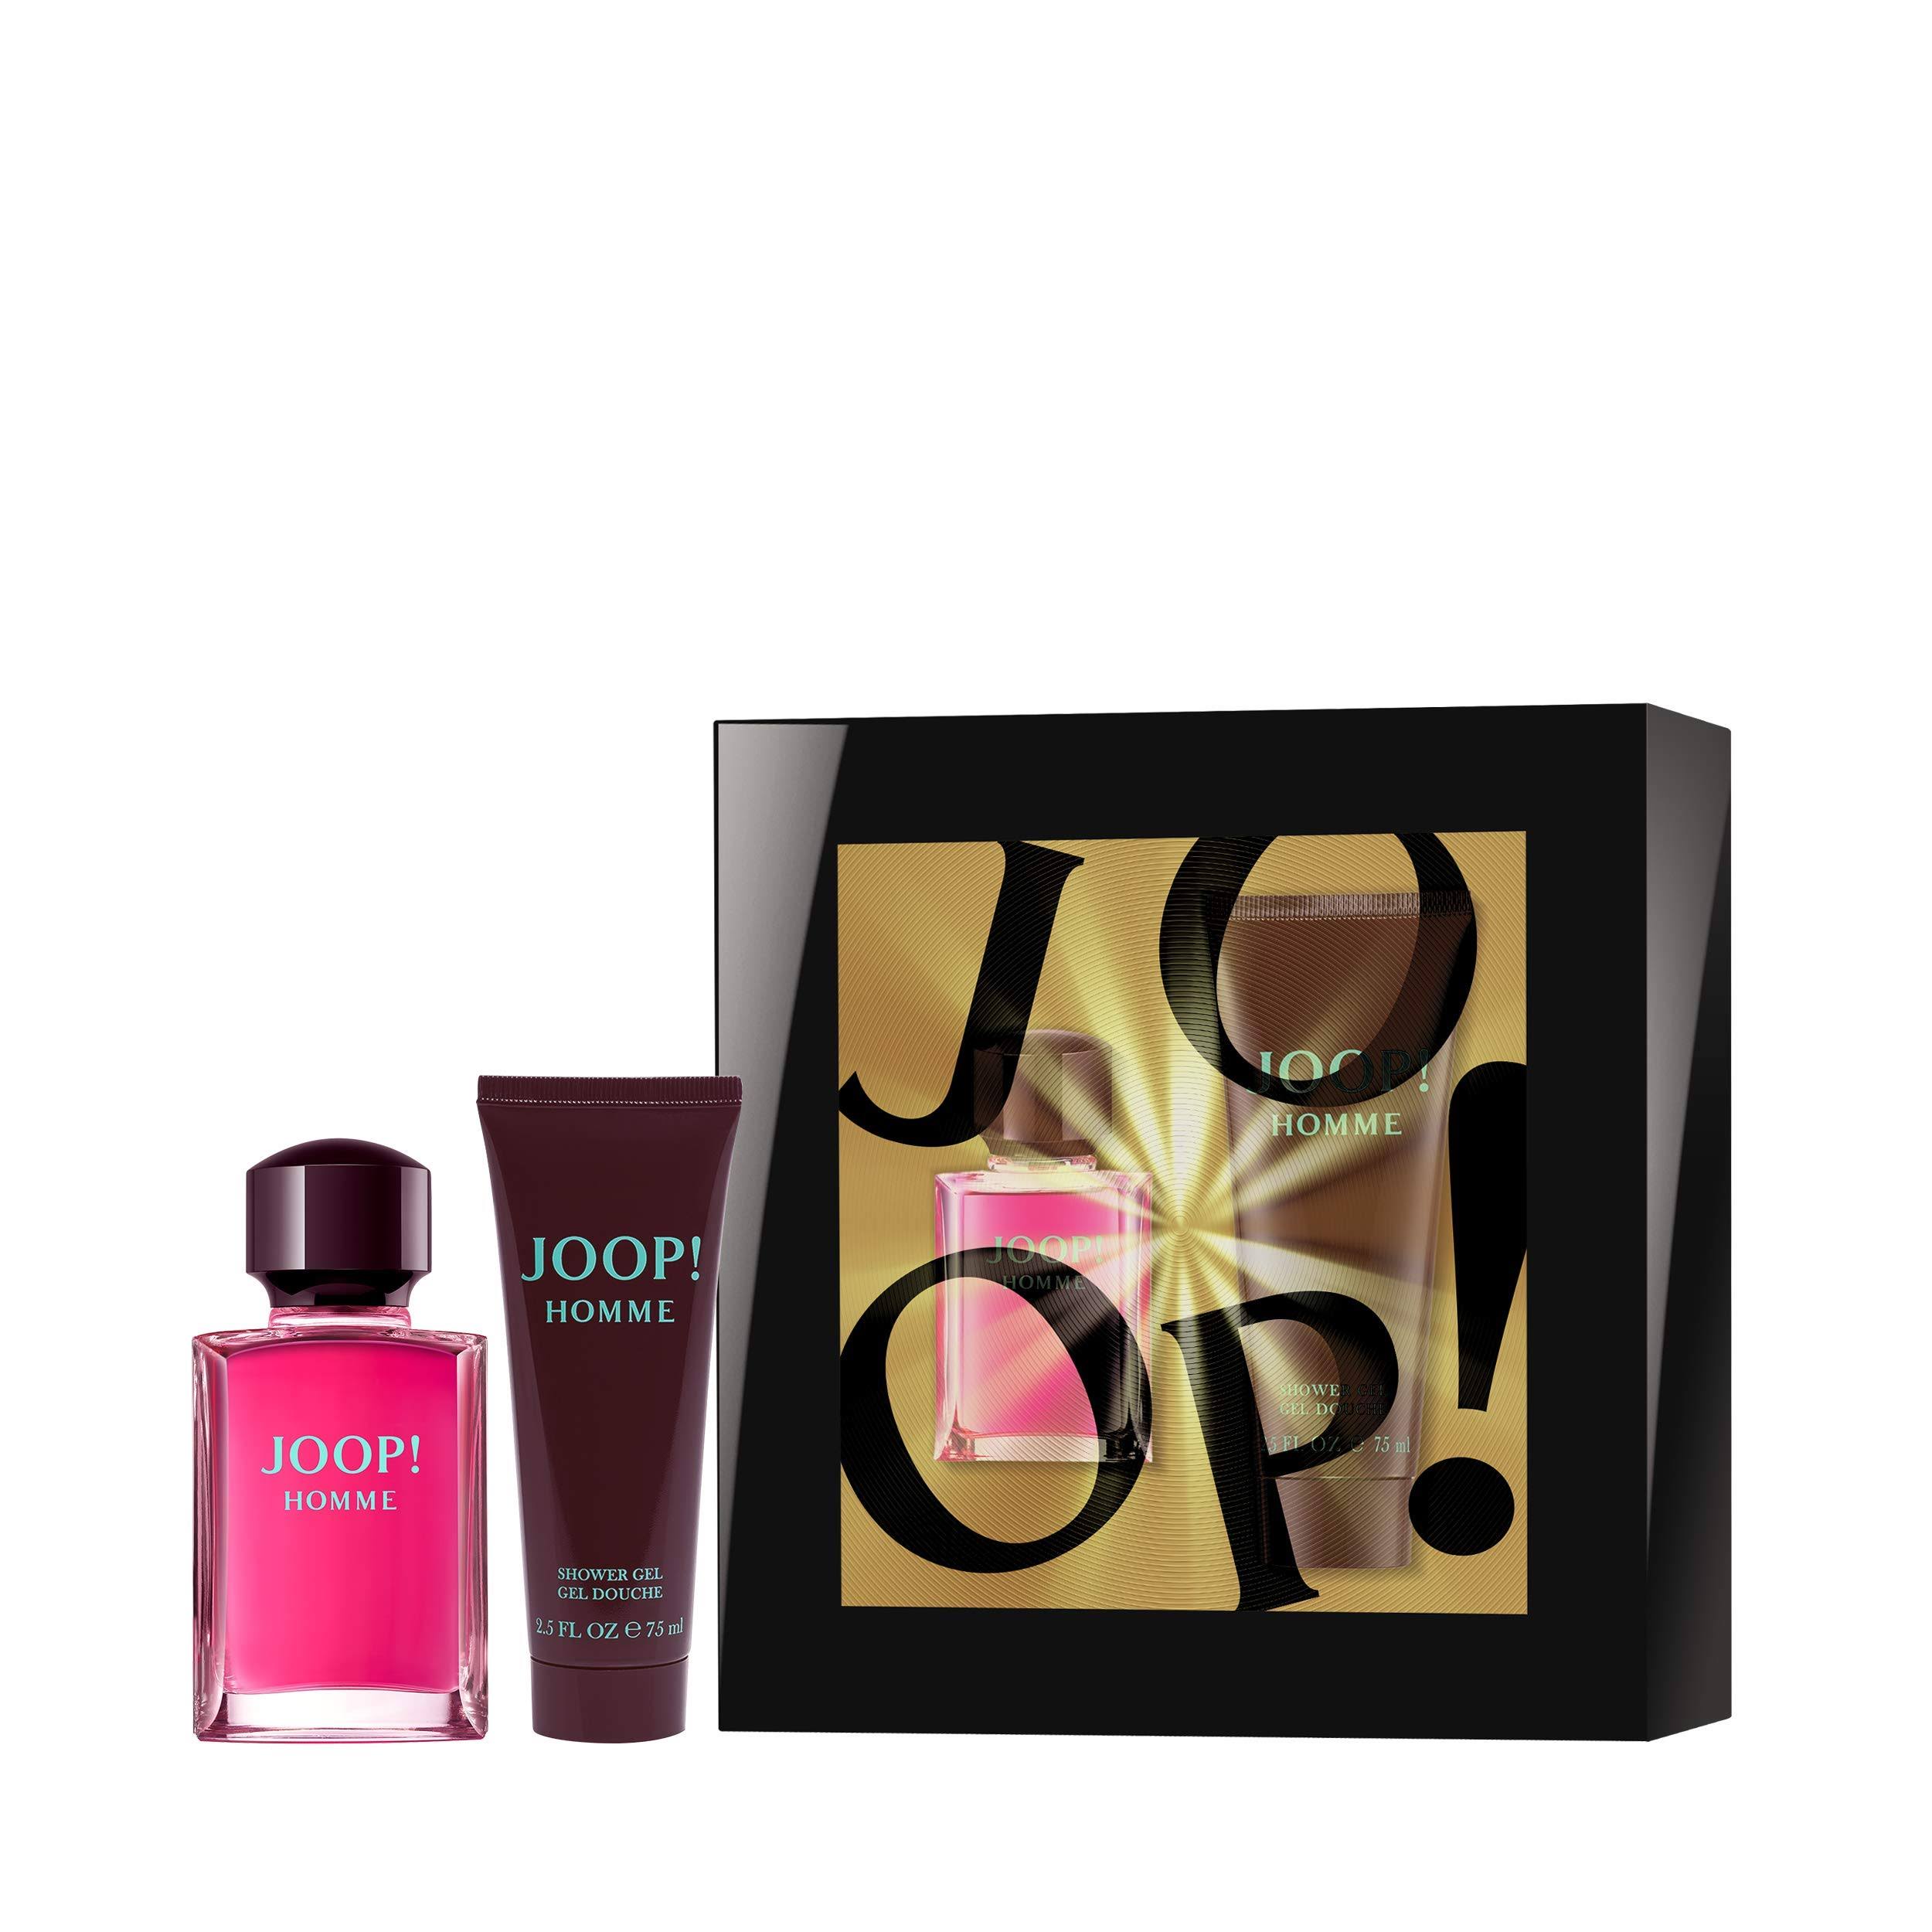 Joop Gift Set By Joop! 2.5 oz Eau De Toilette Spray + 2.5 oz Shower Gel